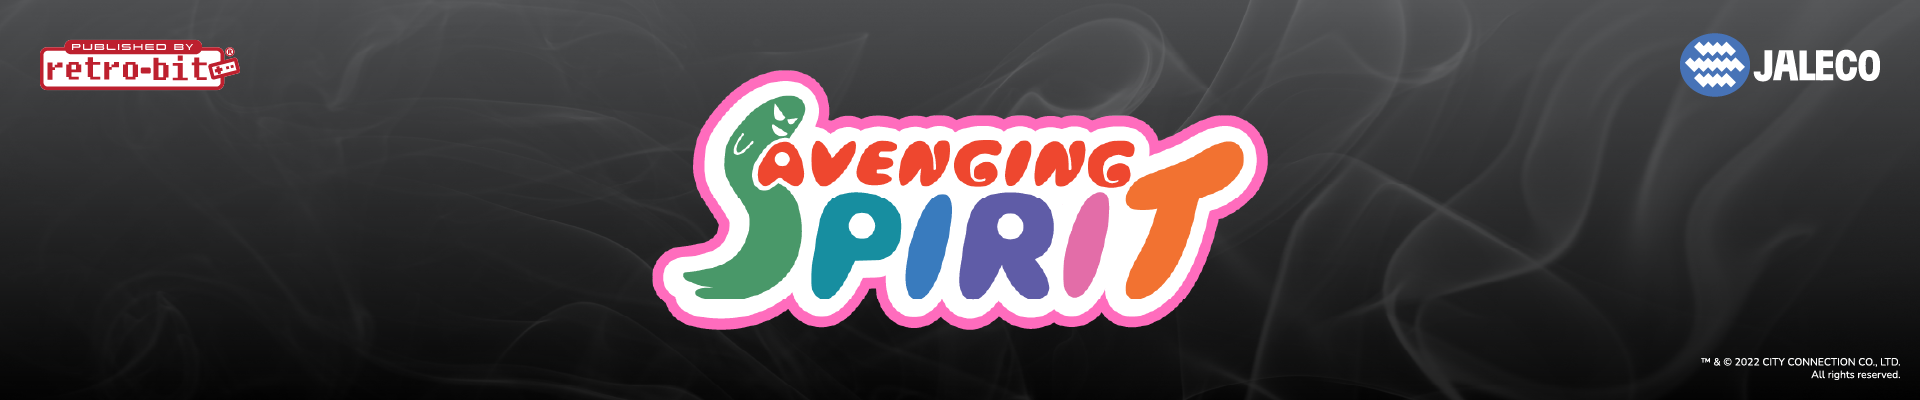 Avenging Spirit - Header Banner